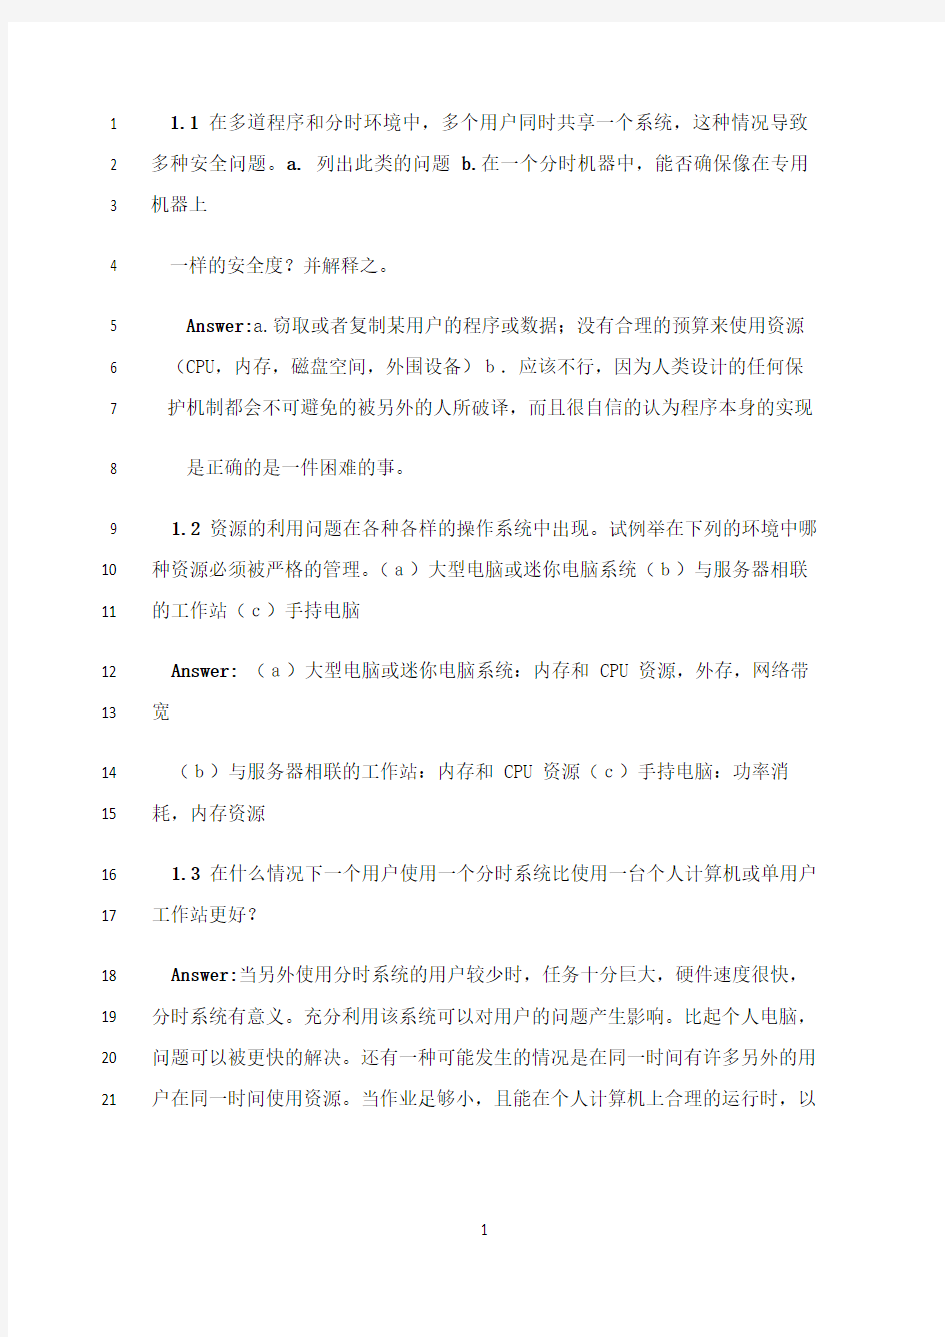 最新操作系统概念第七版习题答案(中文版)完整版